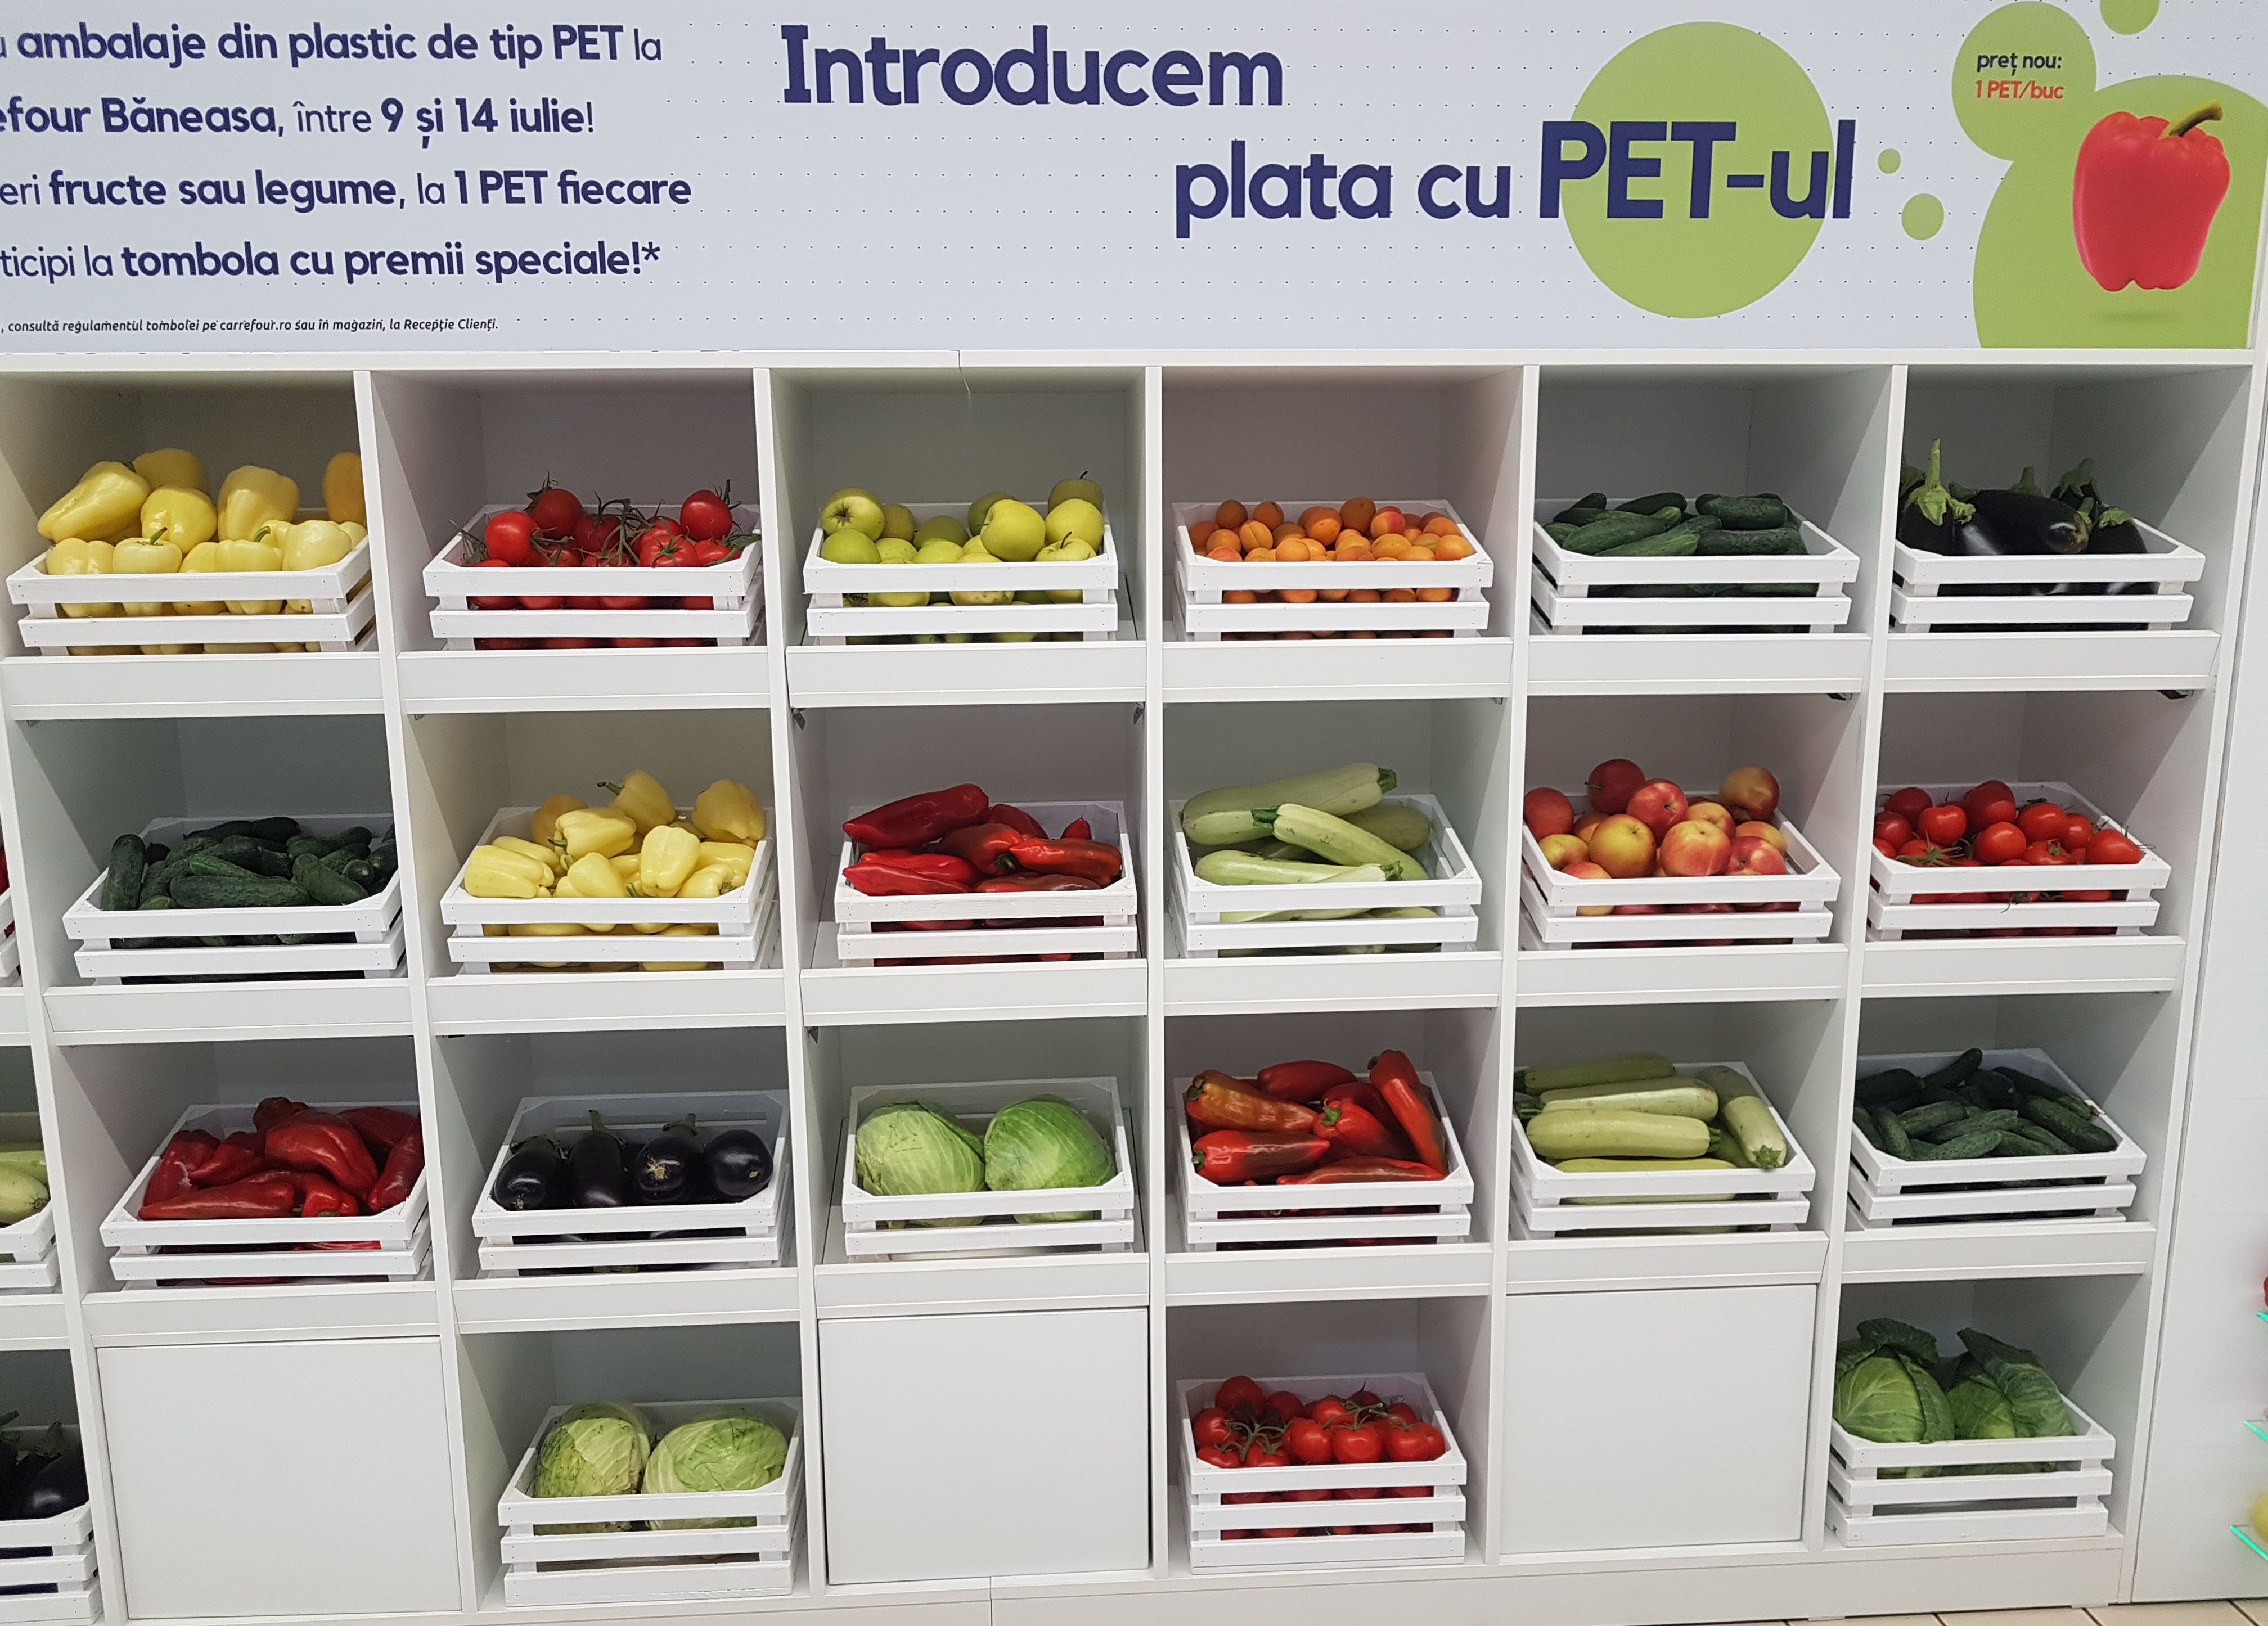 Unde poti cumpara fructe si legume cu PET-uri in loc de bani